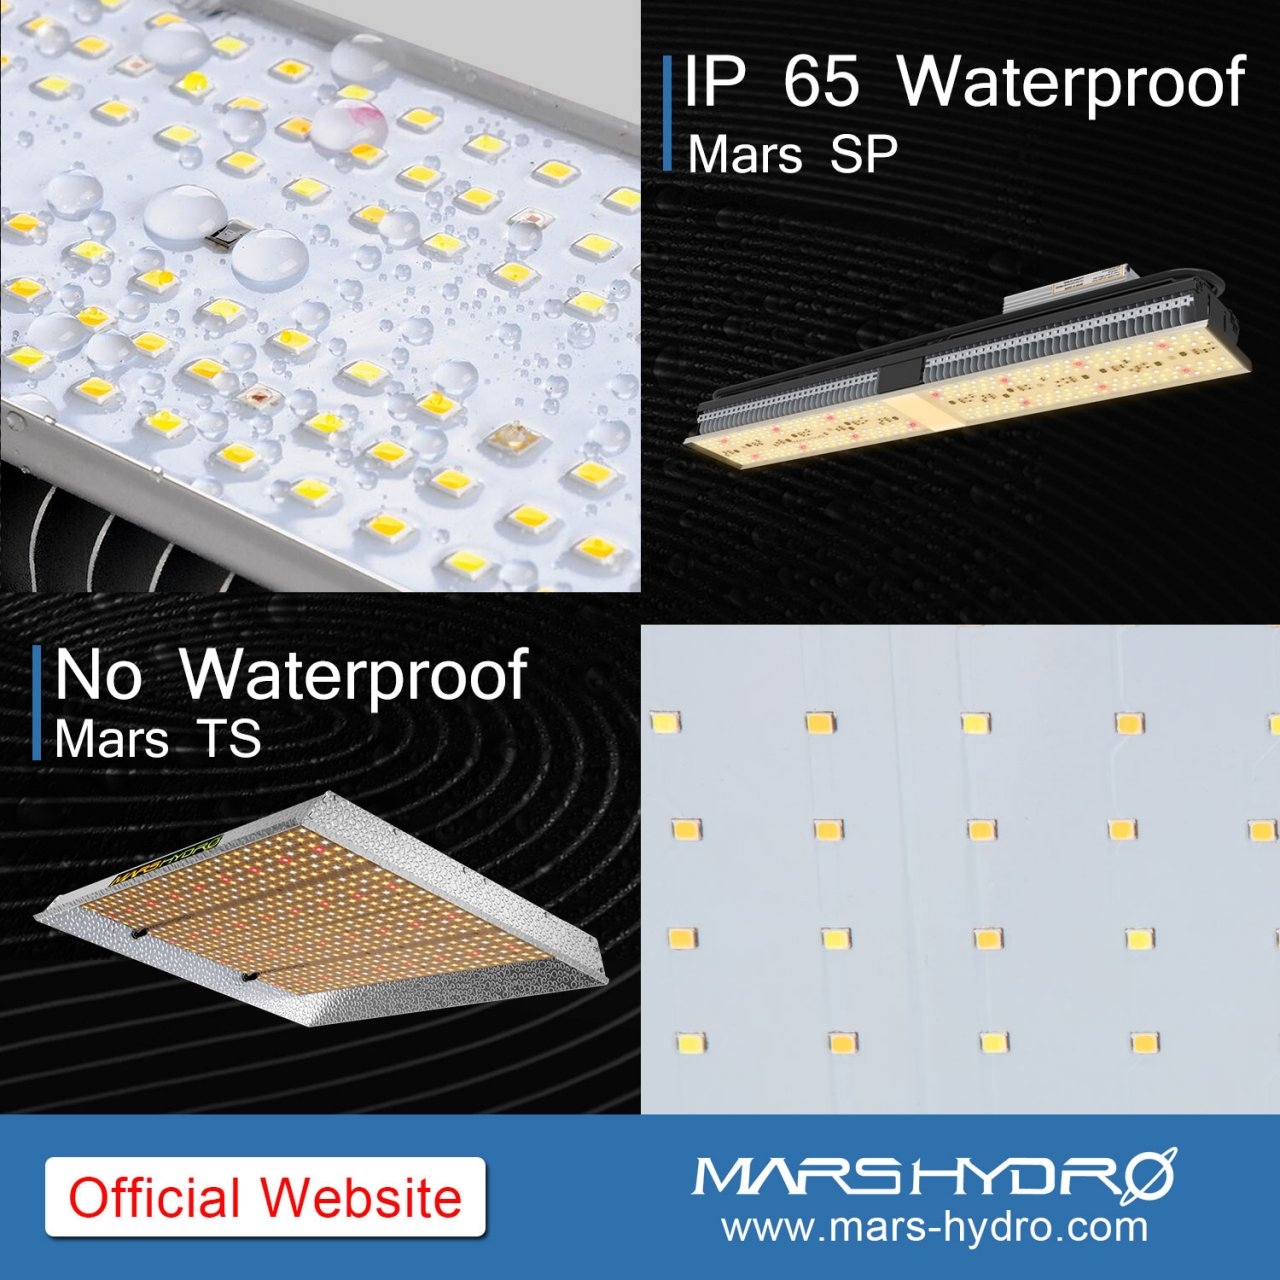 TS+SP waterproof.jpg